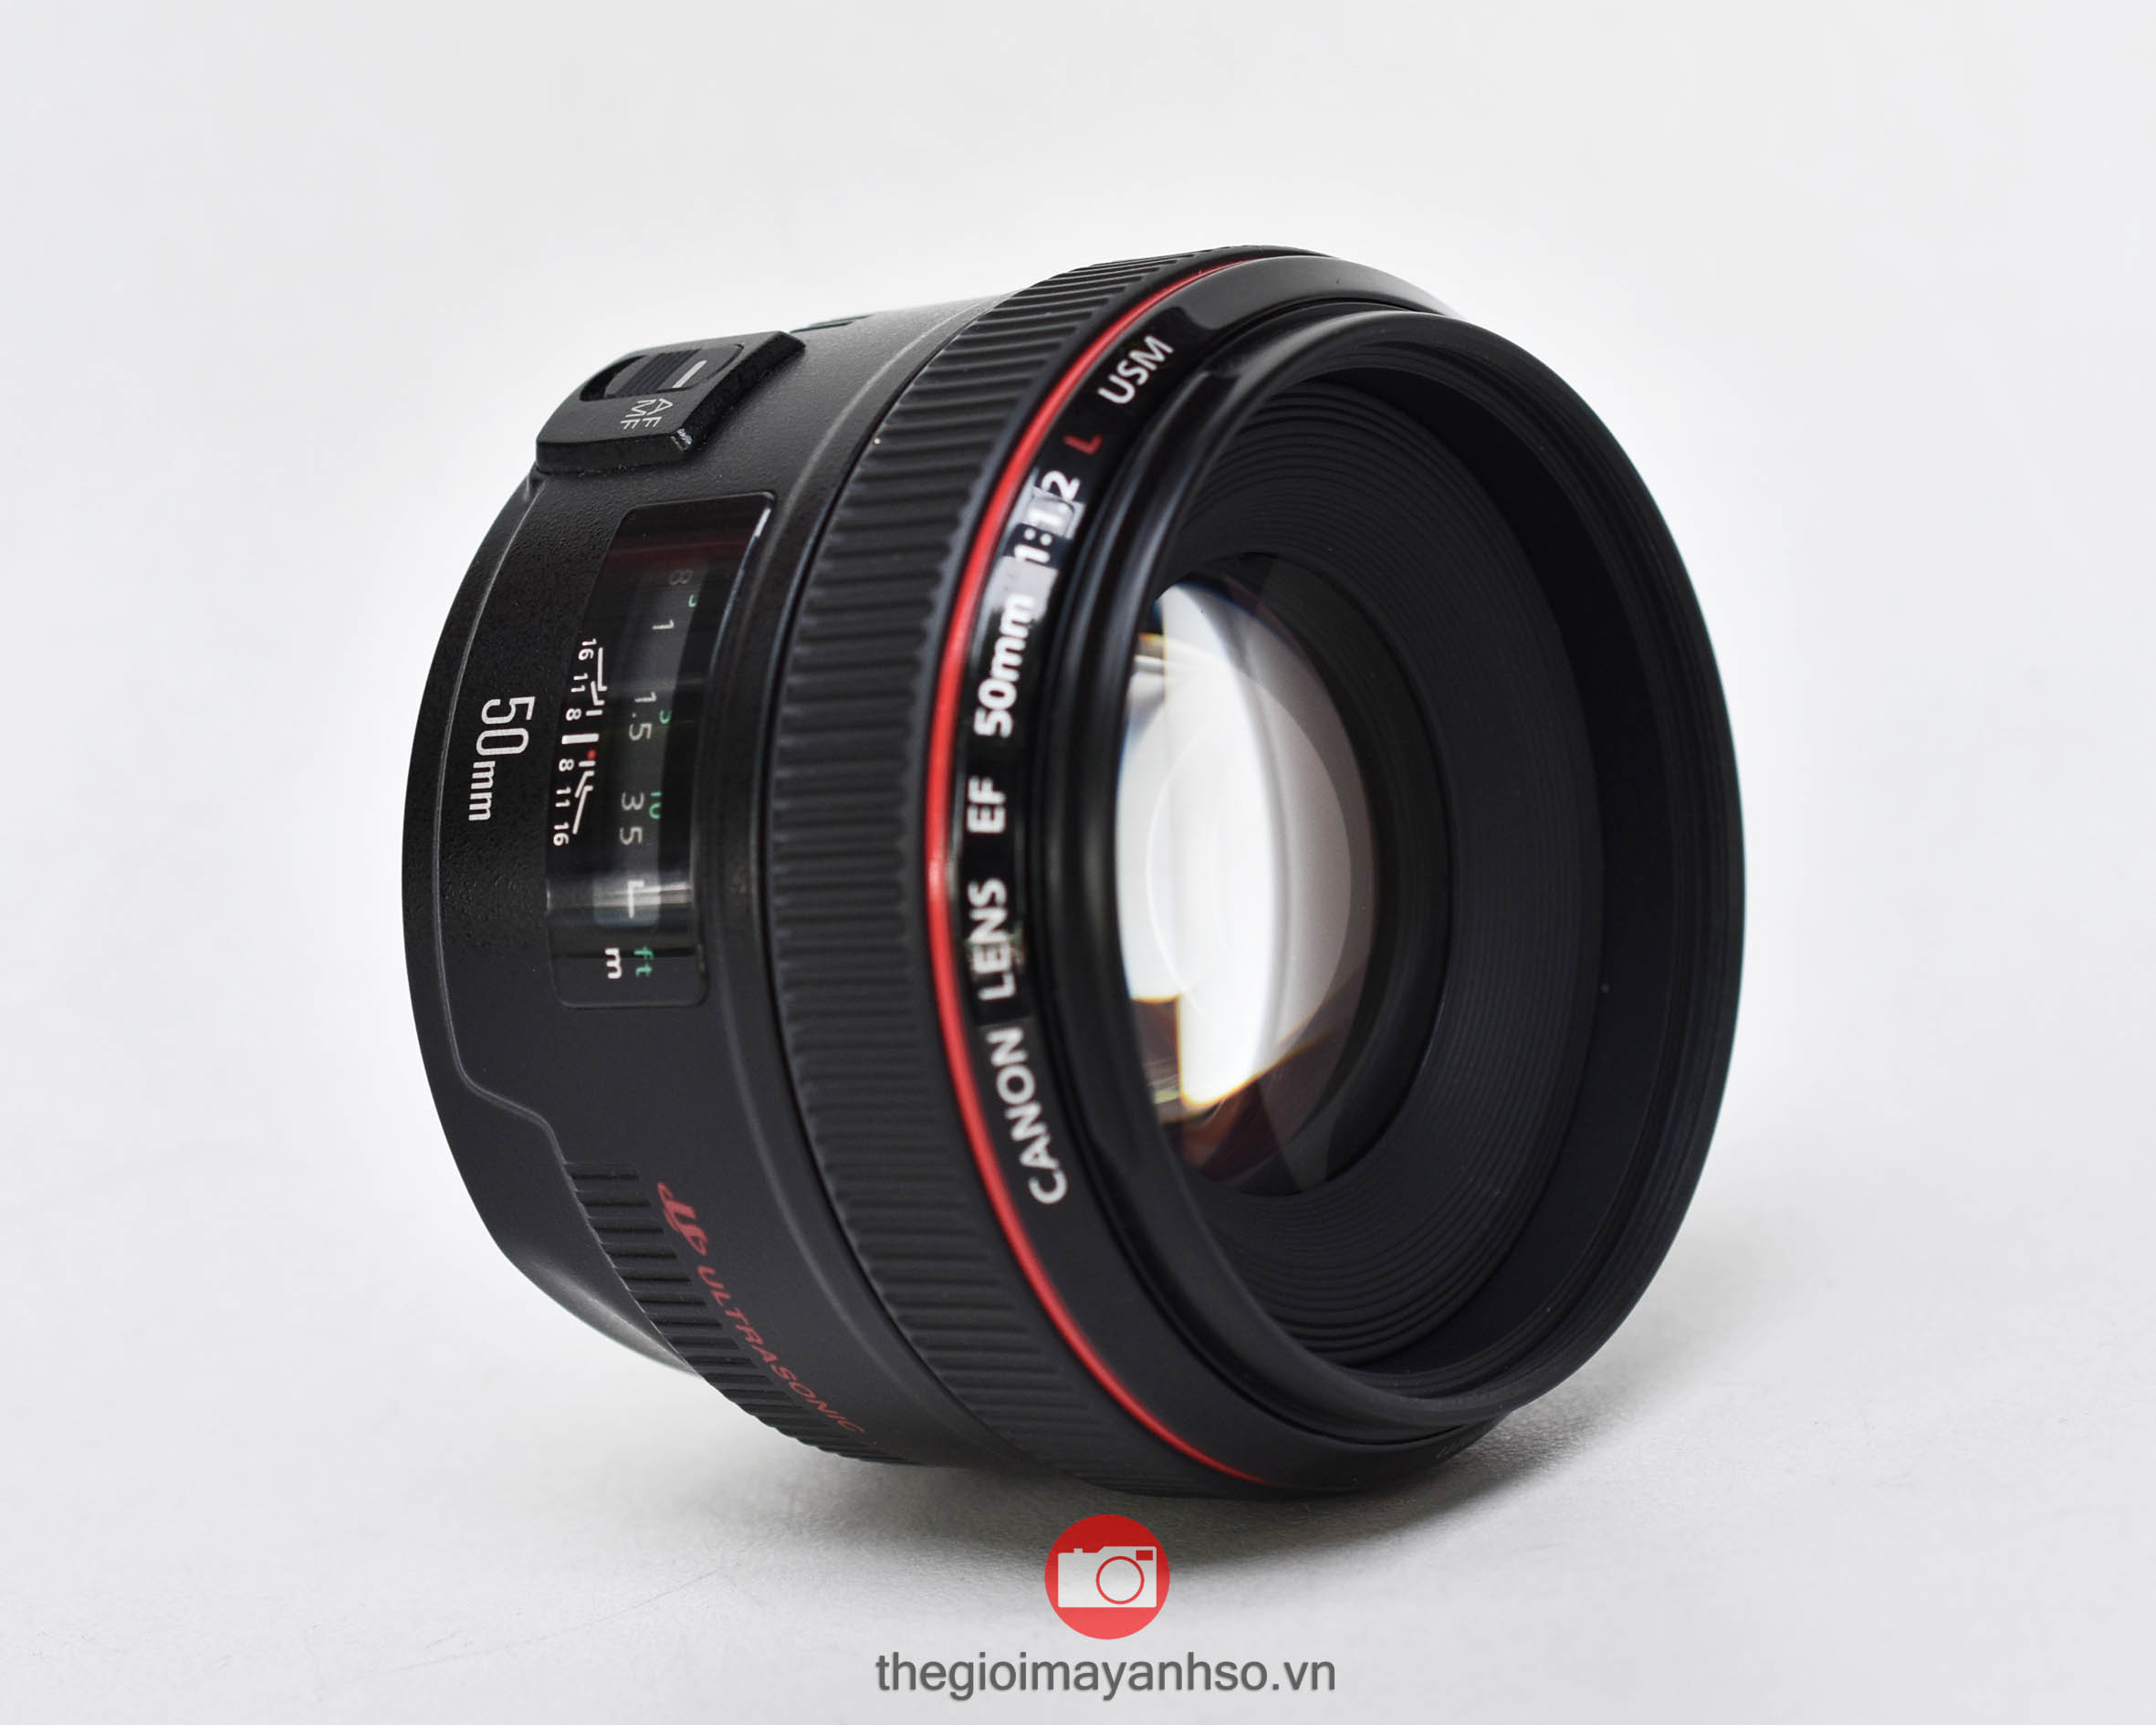  Ống kính Canon EF 50mm f/1.2L USM